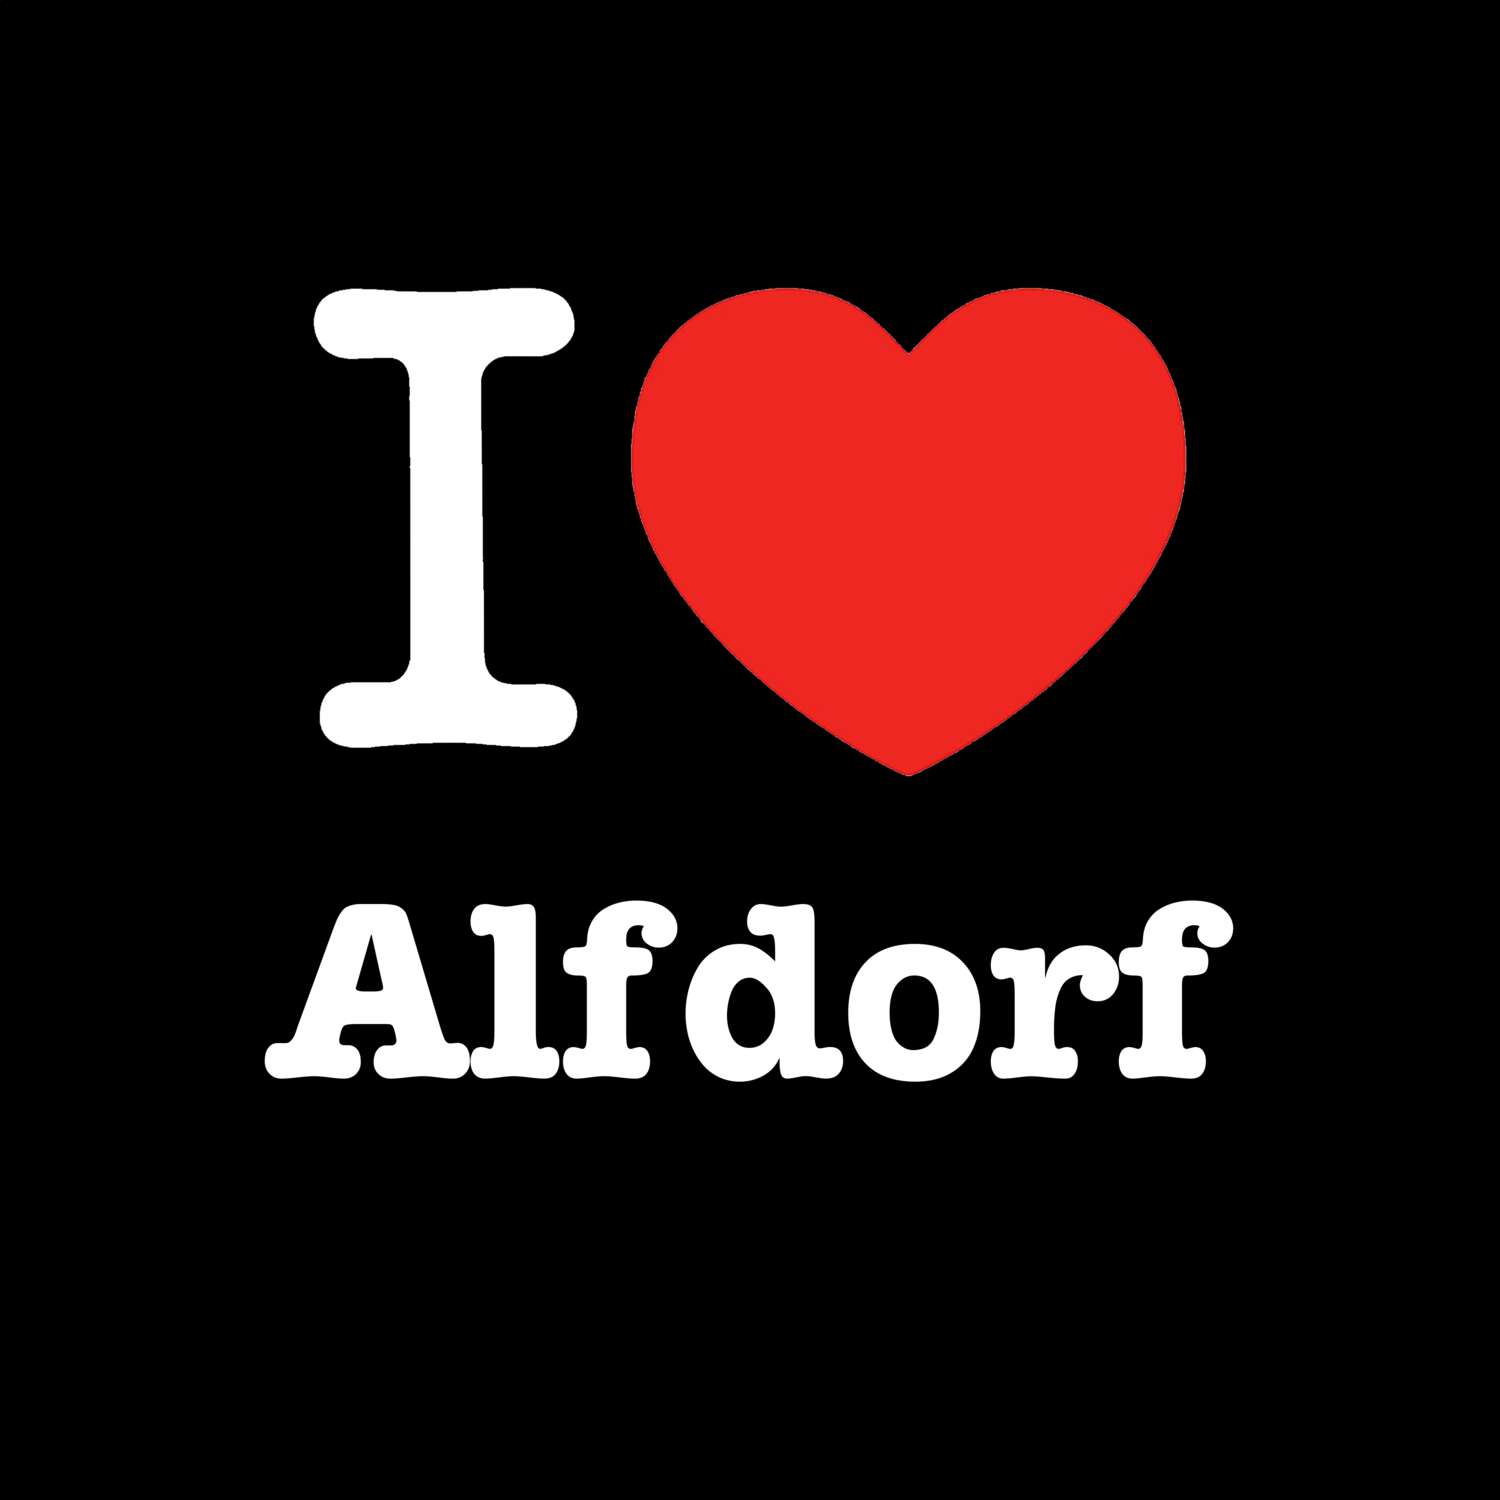 Alfdorf T-Shirt »I love«